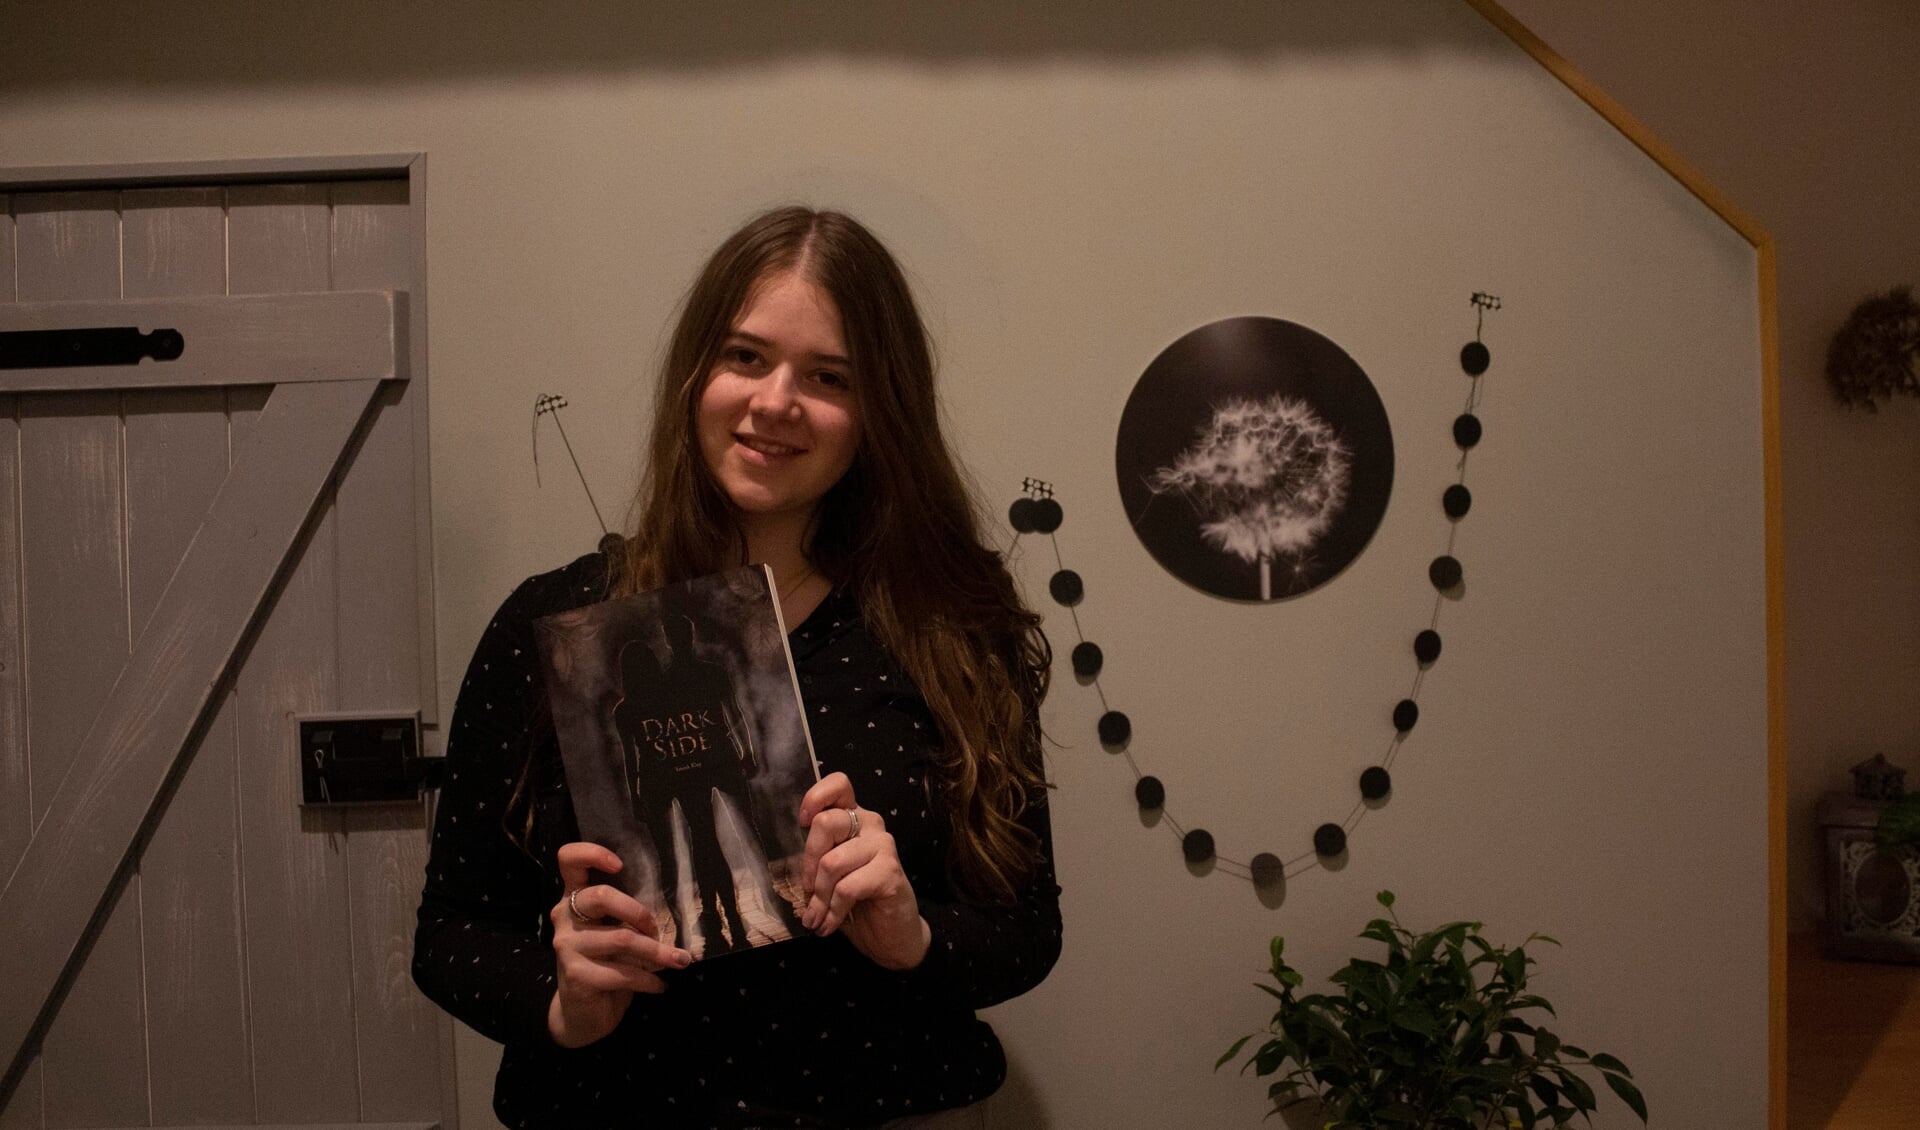 De Dussense Yanouk Klop met haar boek 'Darkside - Overleeft de liefde als je duistere kant naar boven komt?’.